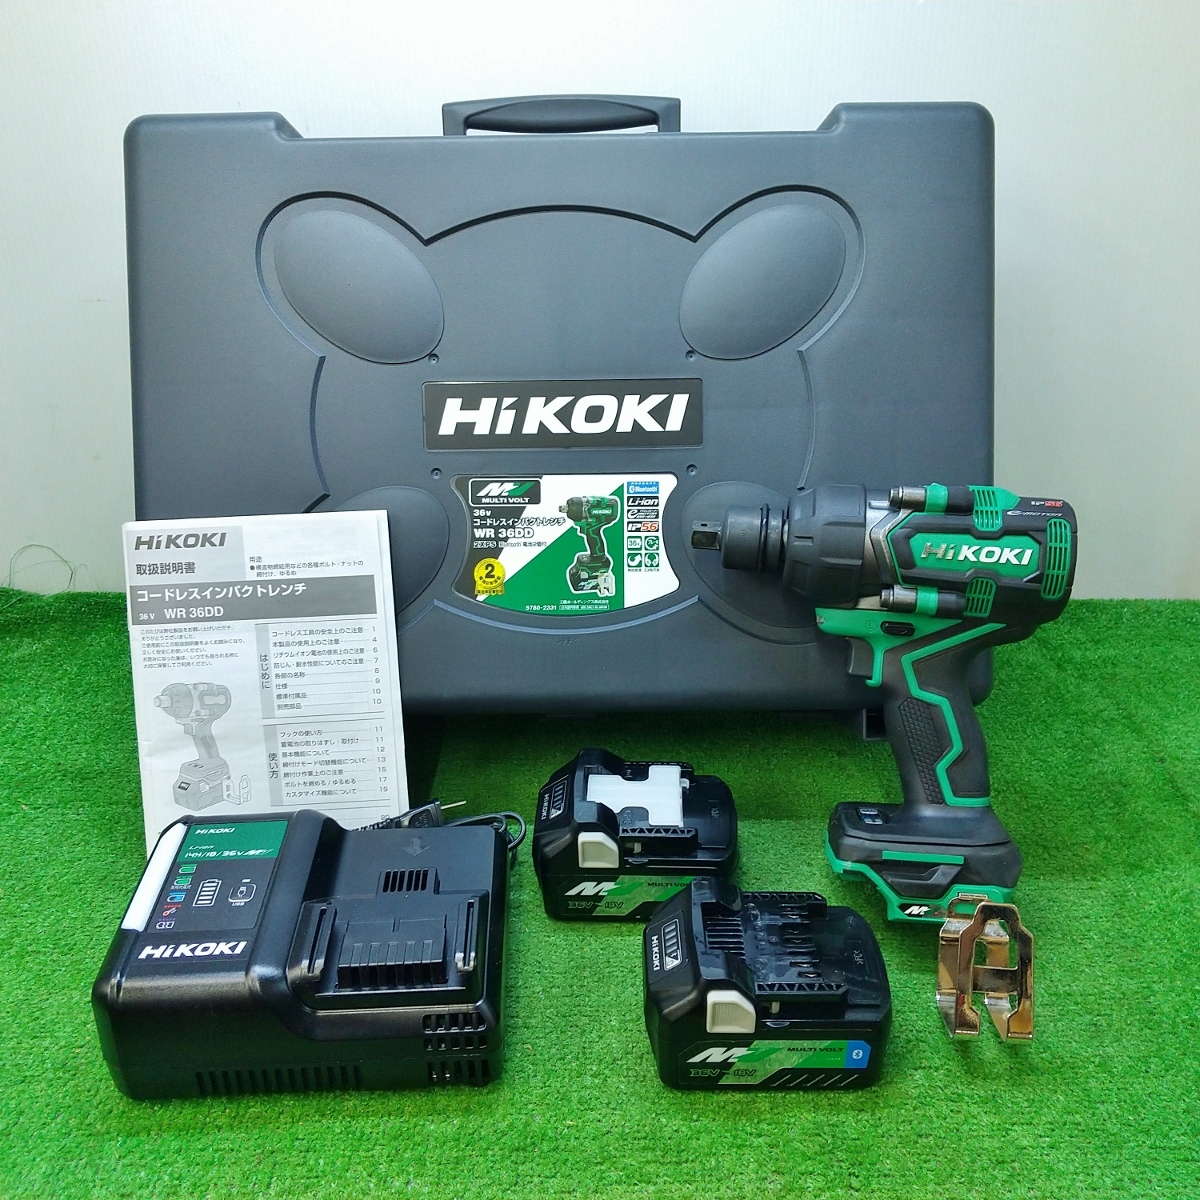 HIKOKI ハイコーキ マルチボルト 36V コードレスインパクトレンチ